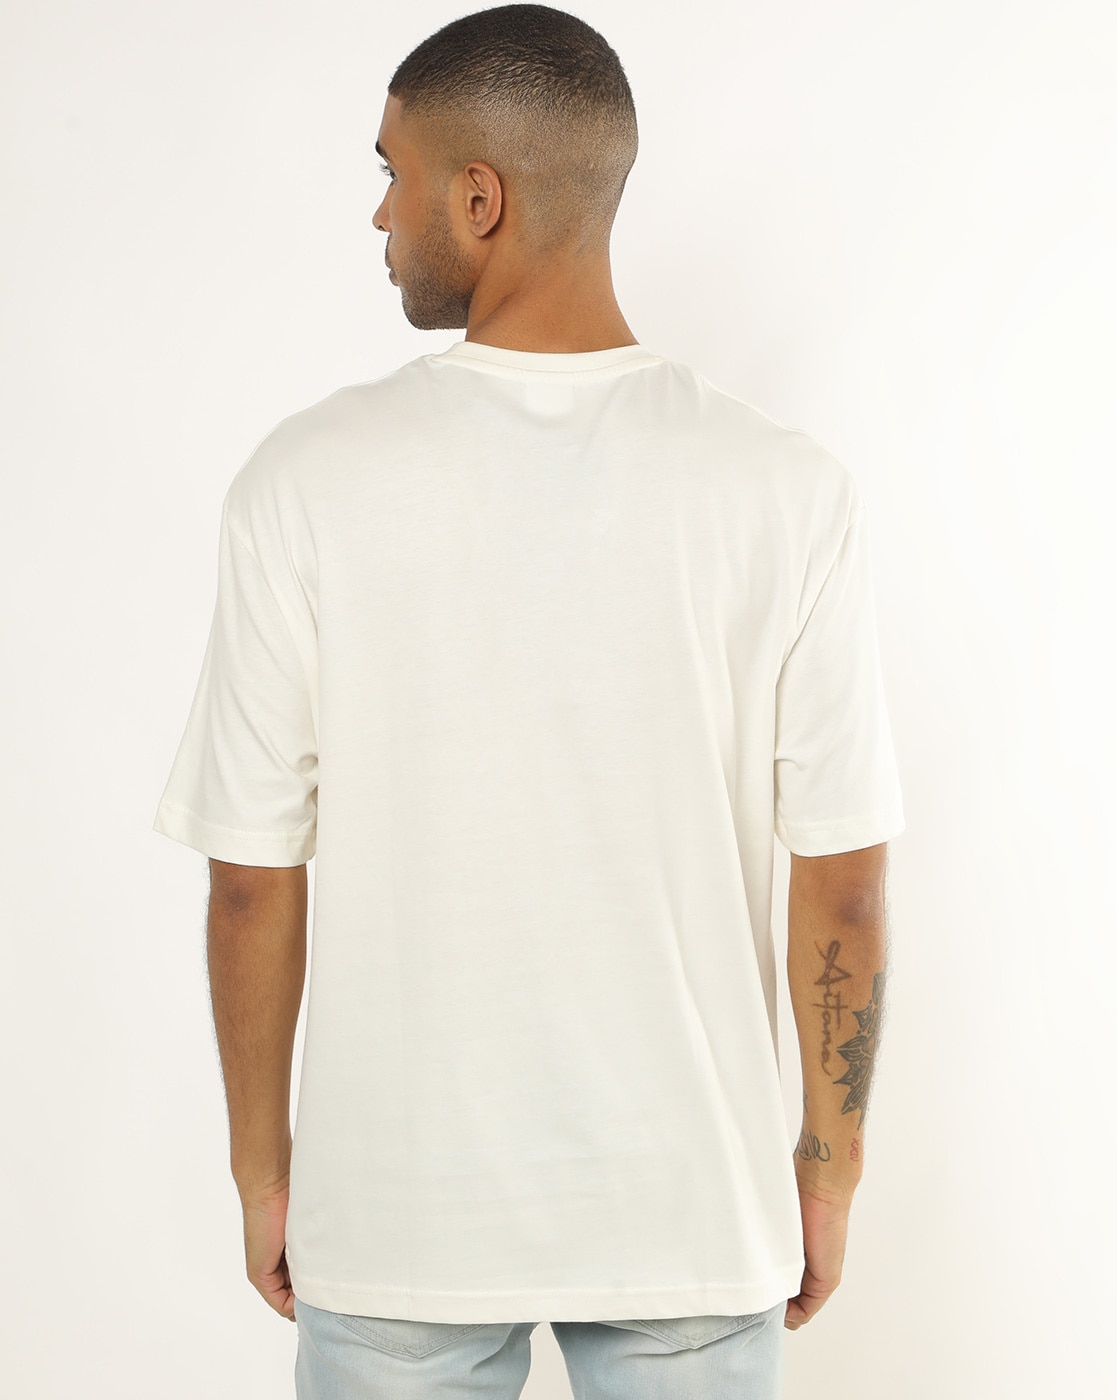 White T Shirt - AVI 256